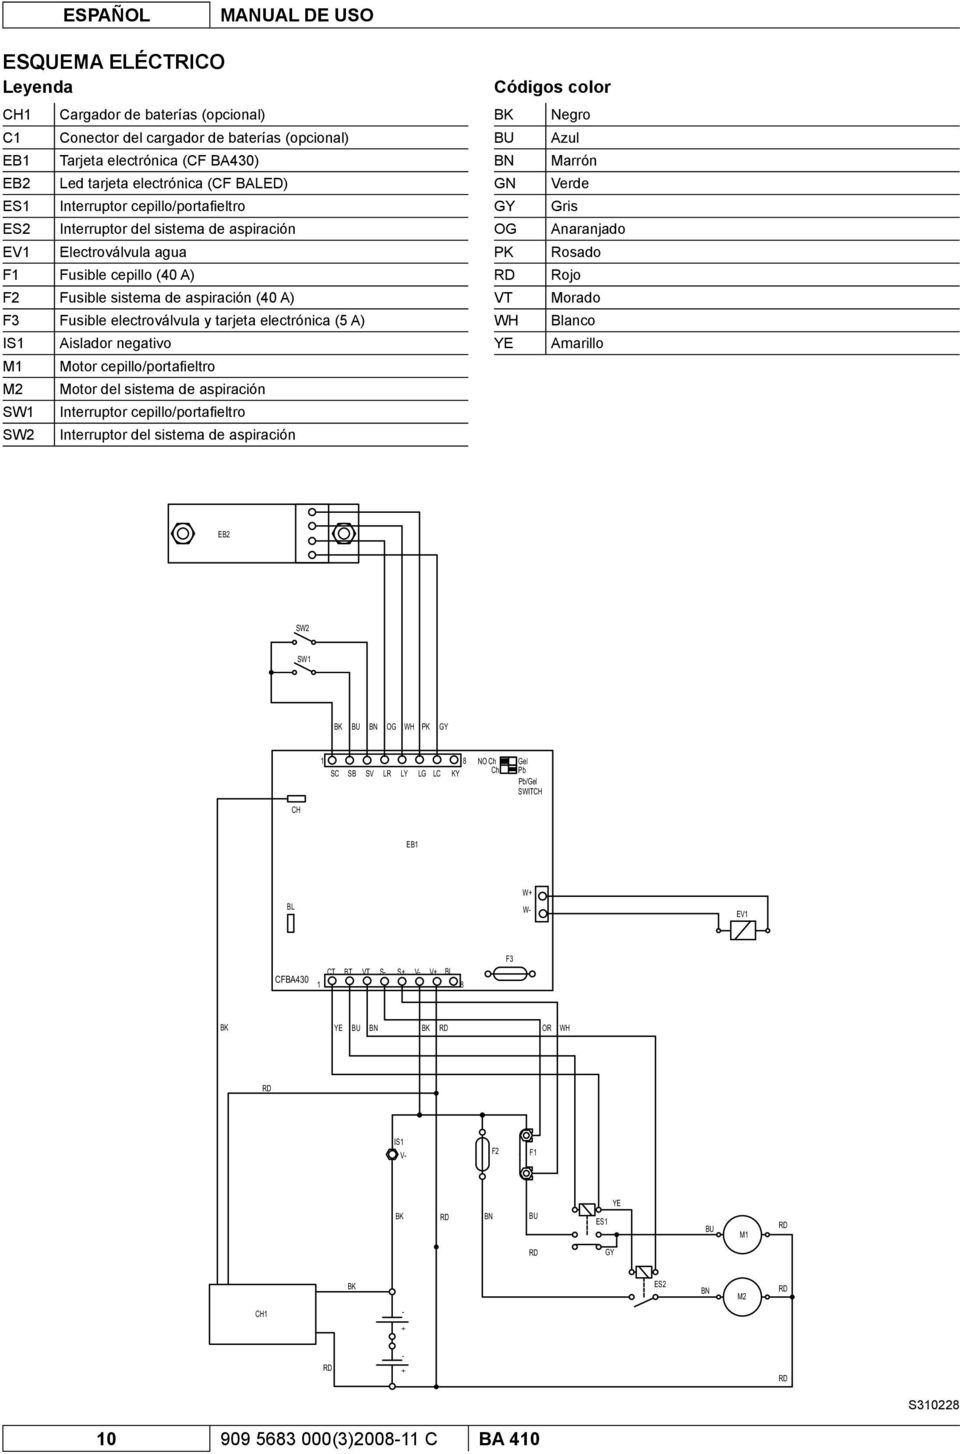 electroválvula y tarjeta electrónica (5 A) IS1 Aislador negativo M1 Motor cepillo/portafieltro M2 Motor del sistema de aspiración SW1 Interruptor cepillo/portafi eltro SW2 Interruptor del sistema de